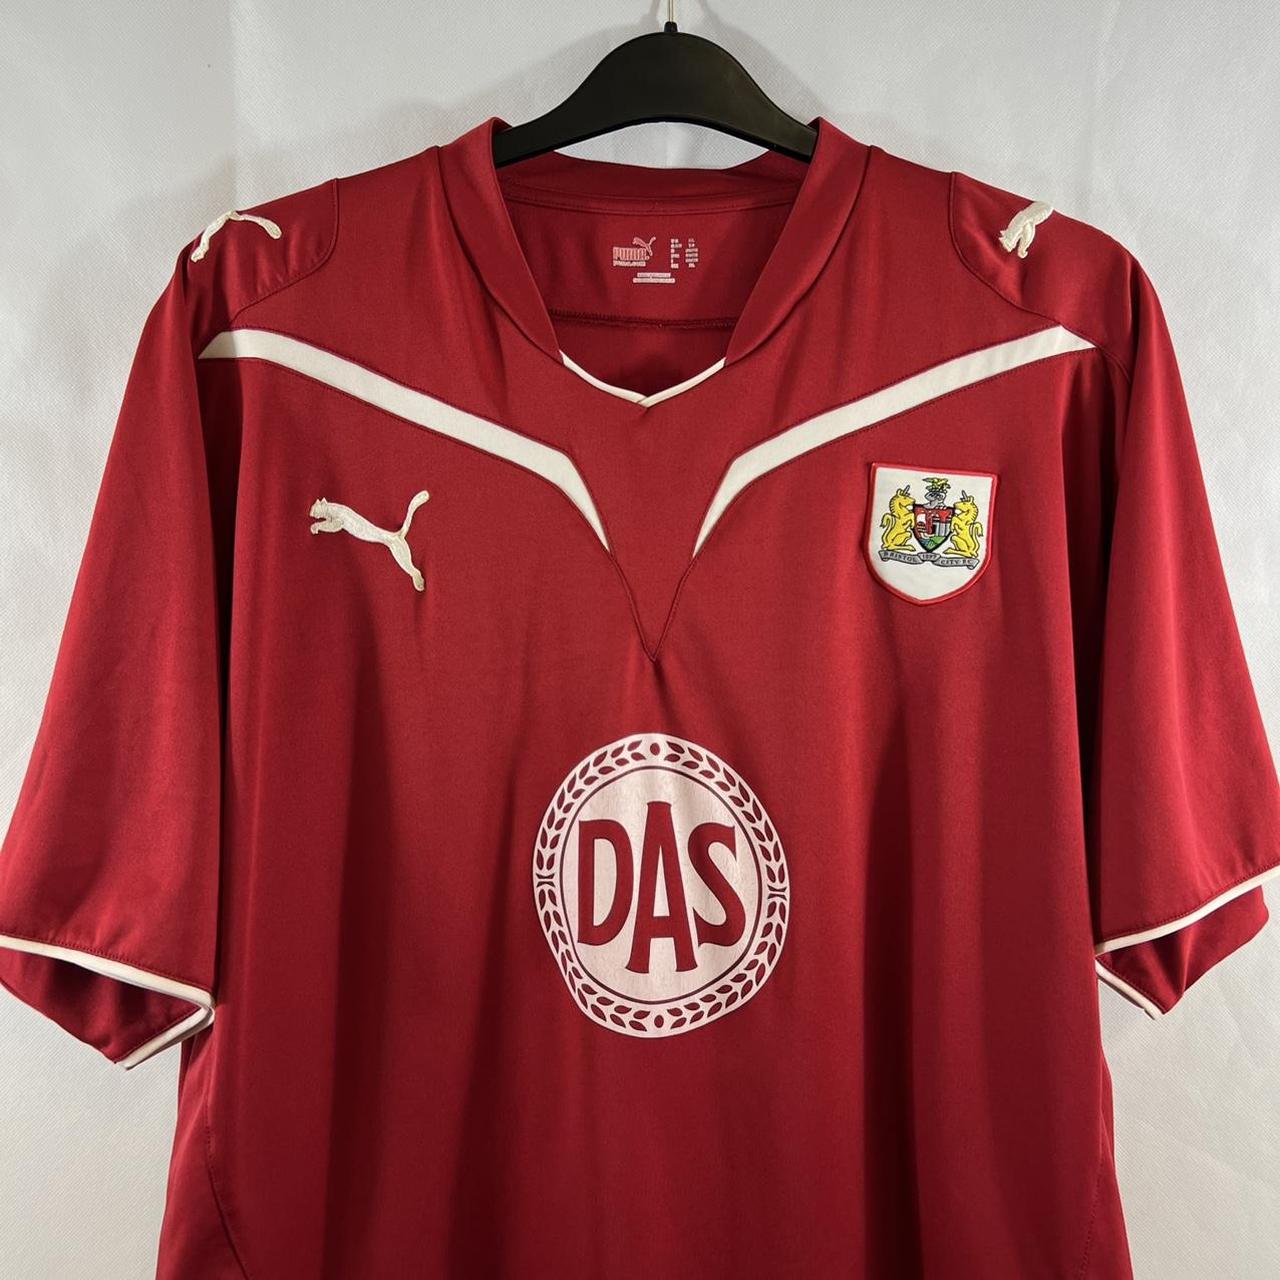 Bristol City Home Football Shirt 2009/10 Adults XL - Depop